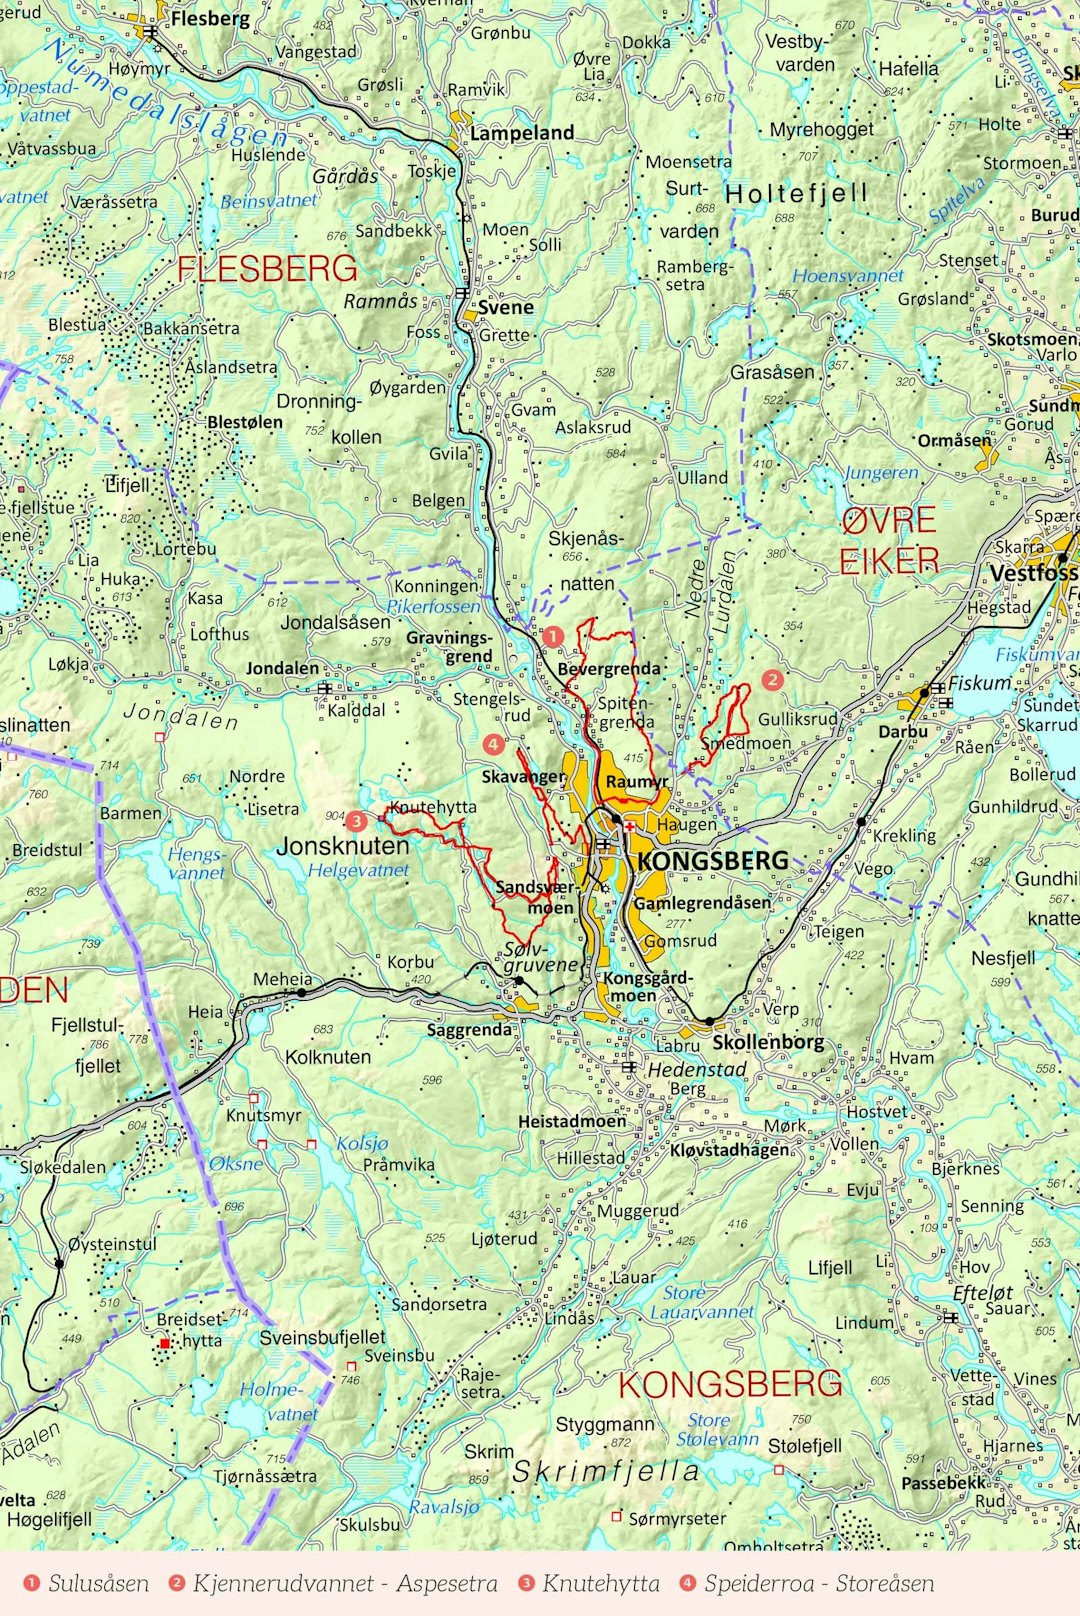 Oversiktskart over Kongsberg med inntegnet rute. Fra Stistykling i Norge.